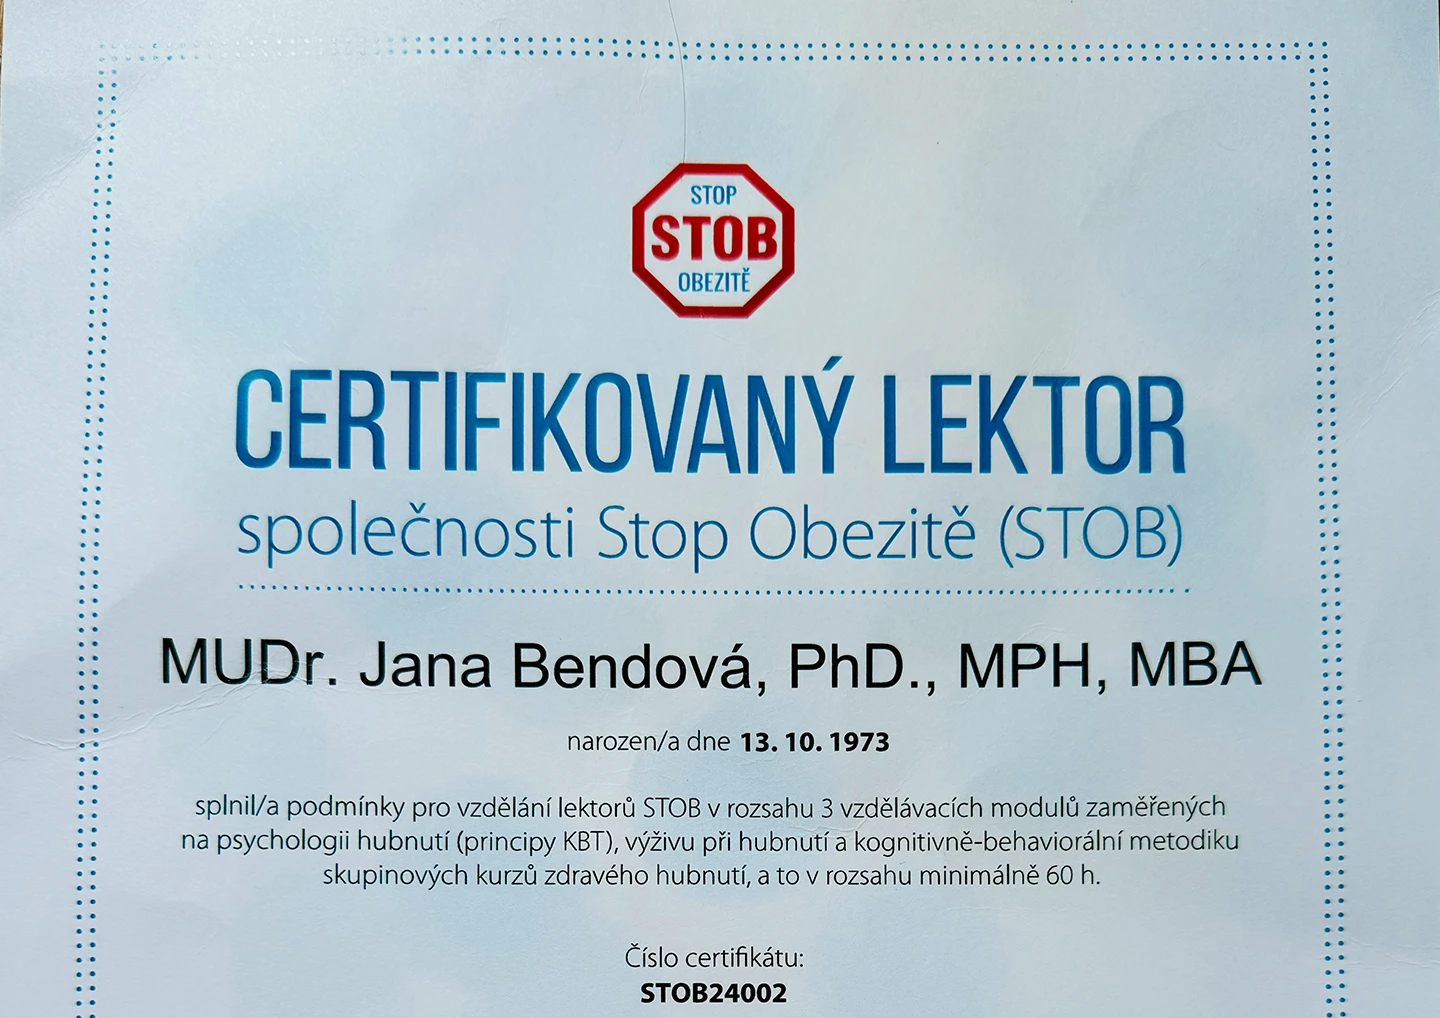 MUDr. Jana Bendová, PhD. certifikovaný lektor